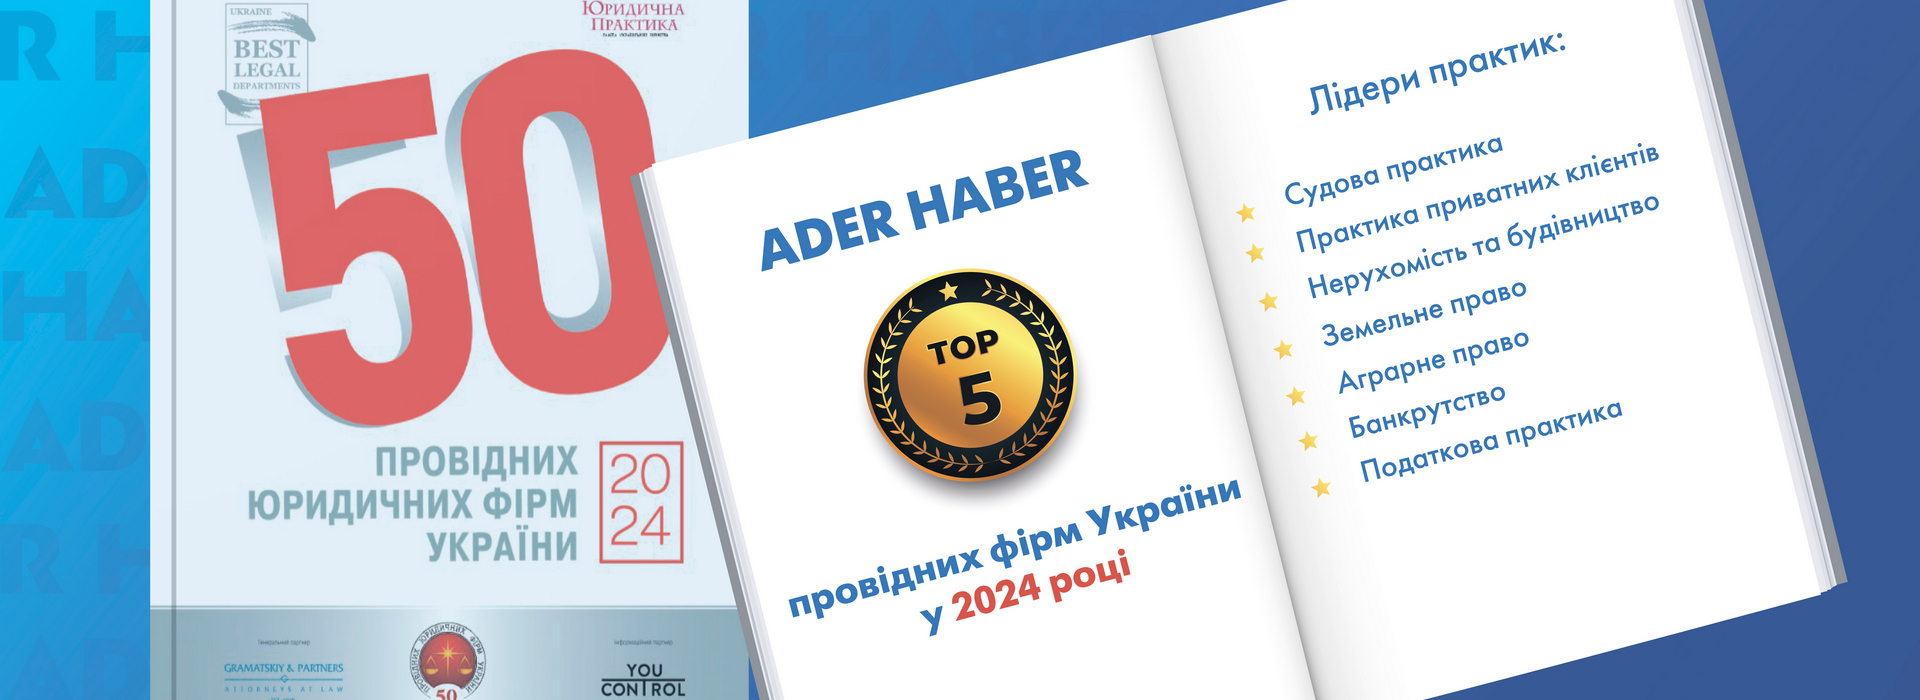 ADER HABER в топ-5 провідних юридичних компаній України 2024 року